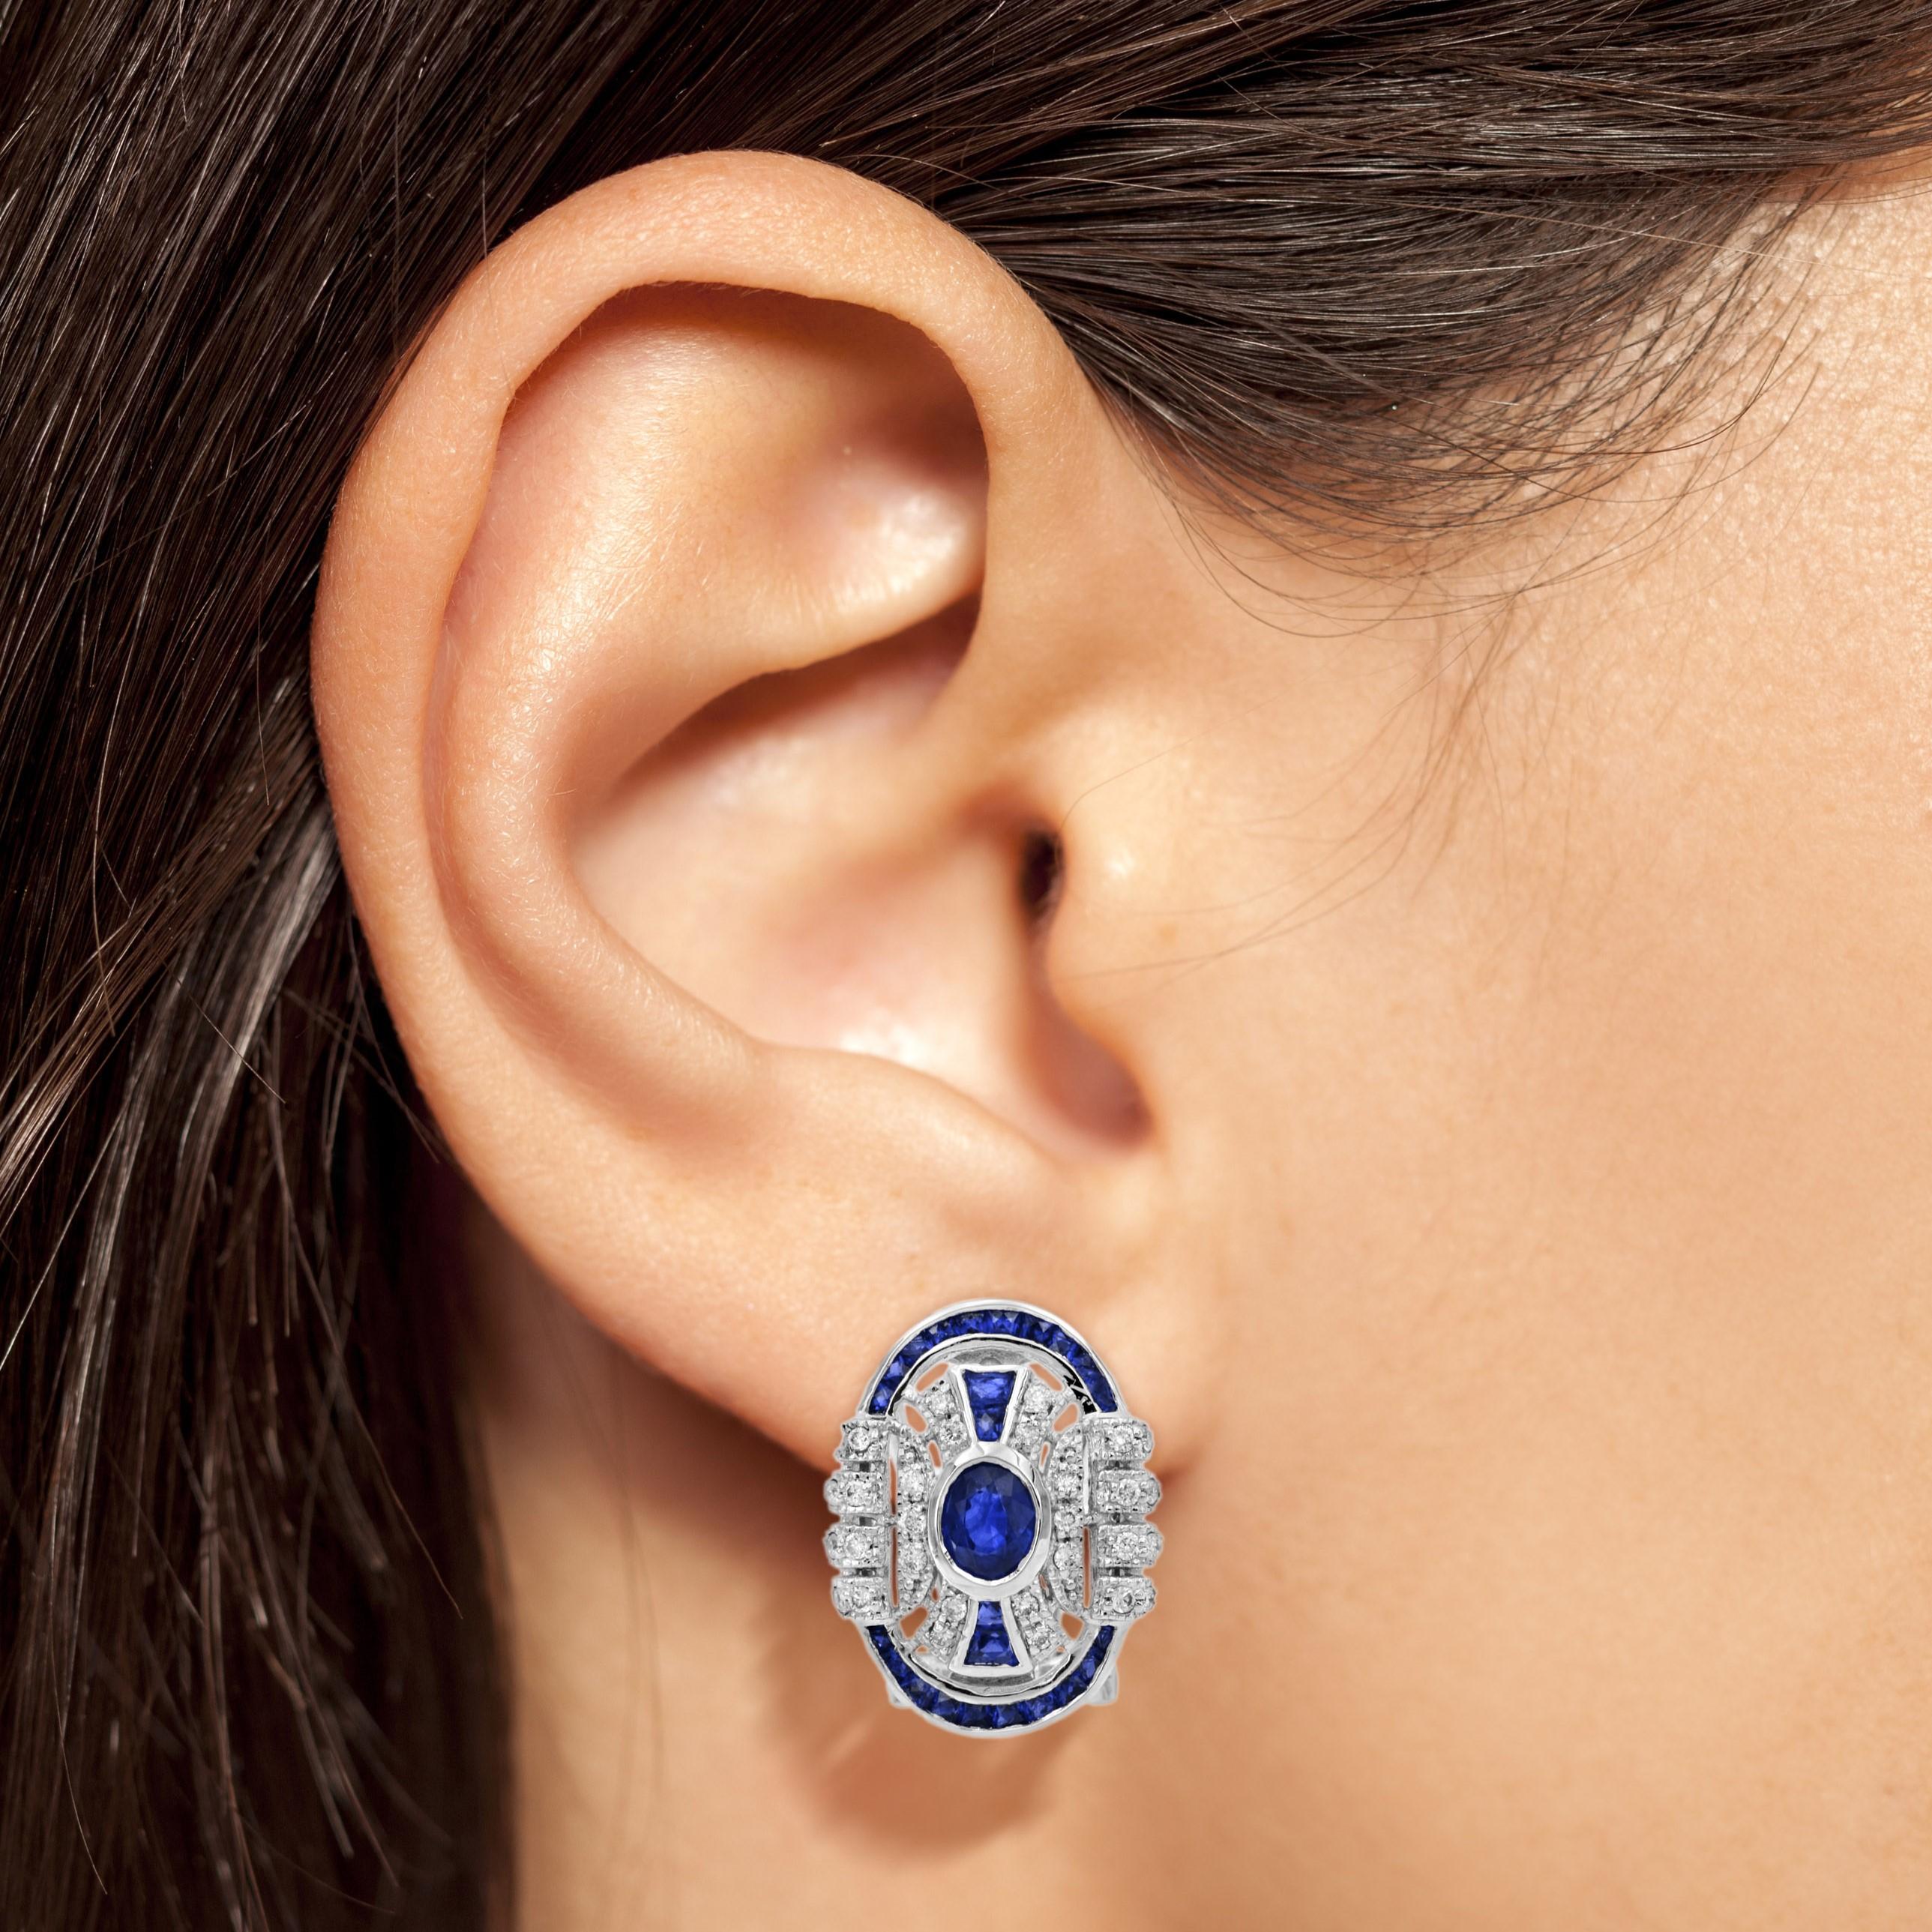 Ein vom Art déco inspiriertes Paar Ohrringe, das die Aufmerksamkeit auf die ovalen blauen Saphire in der Mitte lenkt. Verziert mit ca. 0,41 Karat Diamanten (insgesamt) und blauen Saphiren im französischen Schliff, funkeln diese wunderschönen